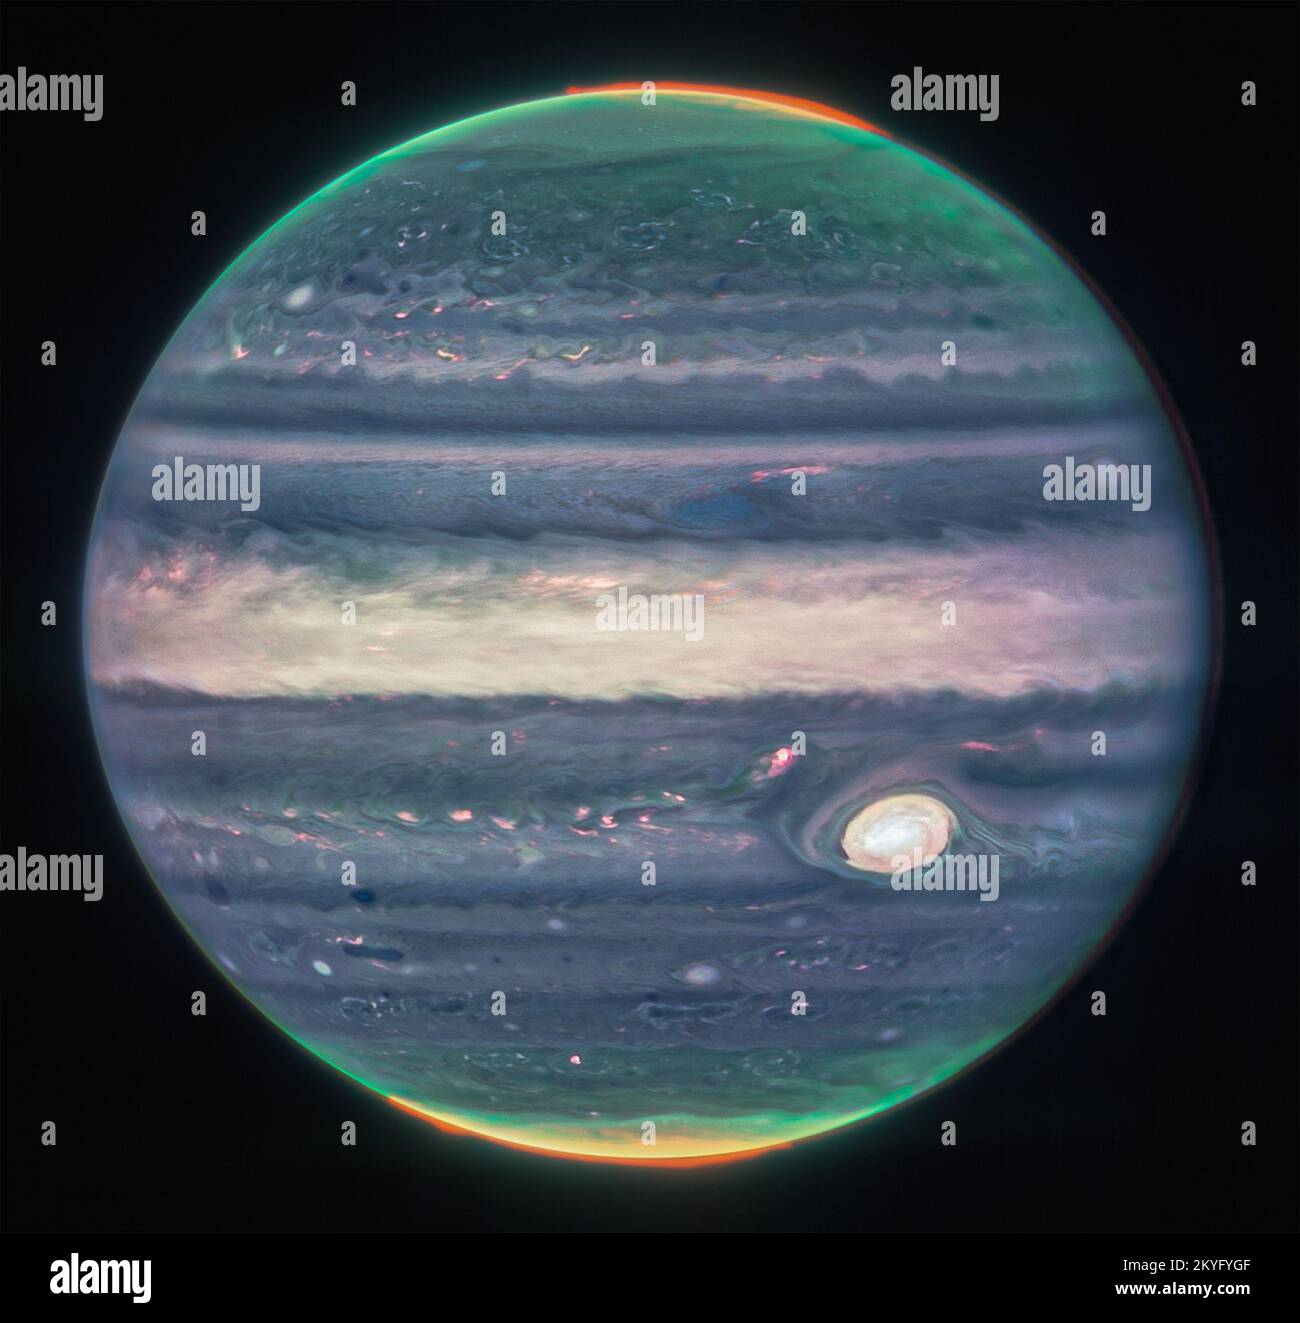 Das James Webb Space Telescope der NASA hat neue Bilder von Jupiter aufgenommen und zeigt die riesigen Stürme, starken Winde, Auroren und extremen Temperatur- und Druckbedingungen des Planeten. Die beiden Bilder stammen von der Nahinfrarot-Kamera (NIRCam) des Observatoriums, die über drei spezielle Infrarotfilter verfügt, die Details des Planeten zeigen. Da Infrarotlicht für das menschliche Auge unsichtbar ist, wurde das Licht auf das sichtbare Spektrum abgebildet. Im Allgemeinen erscheinen die längsten Wellenlängen röter, und die kürzesten Wellenlängen werden blau dargestellt. Wissenschaftler arbeiteten mit der Bürgerwissenschaftlerin Judy SC zusammen Stockfoto